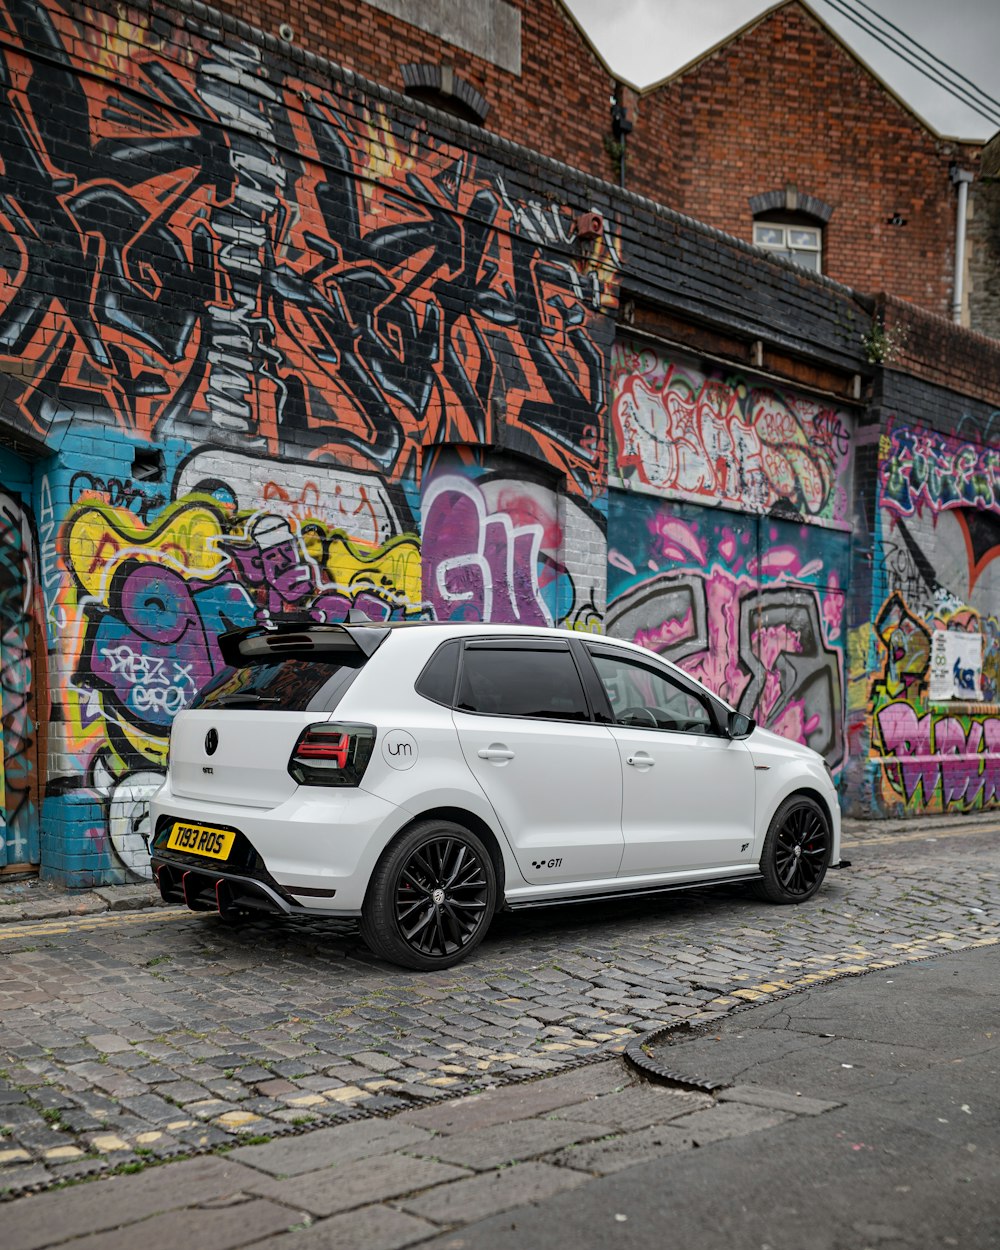 sedán blanco aparcado junto a la pared con grafitis